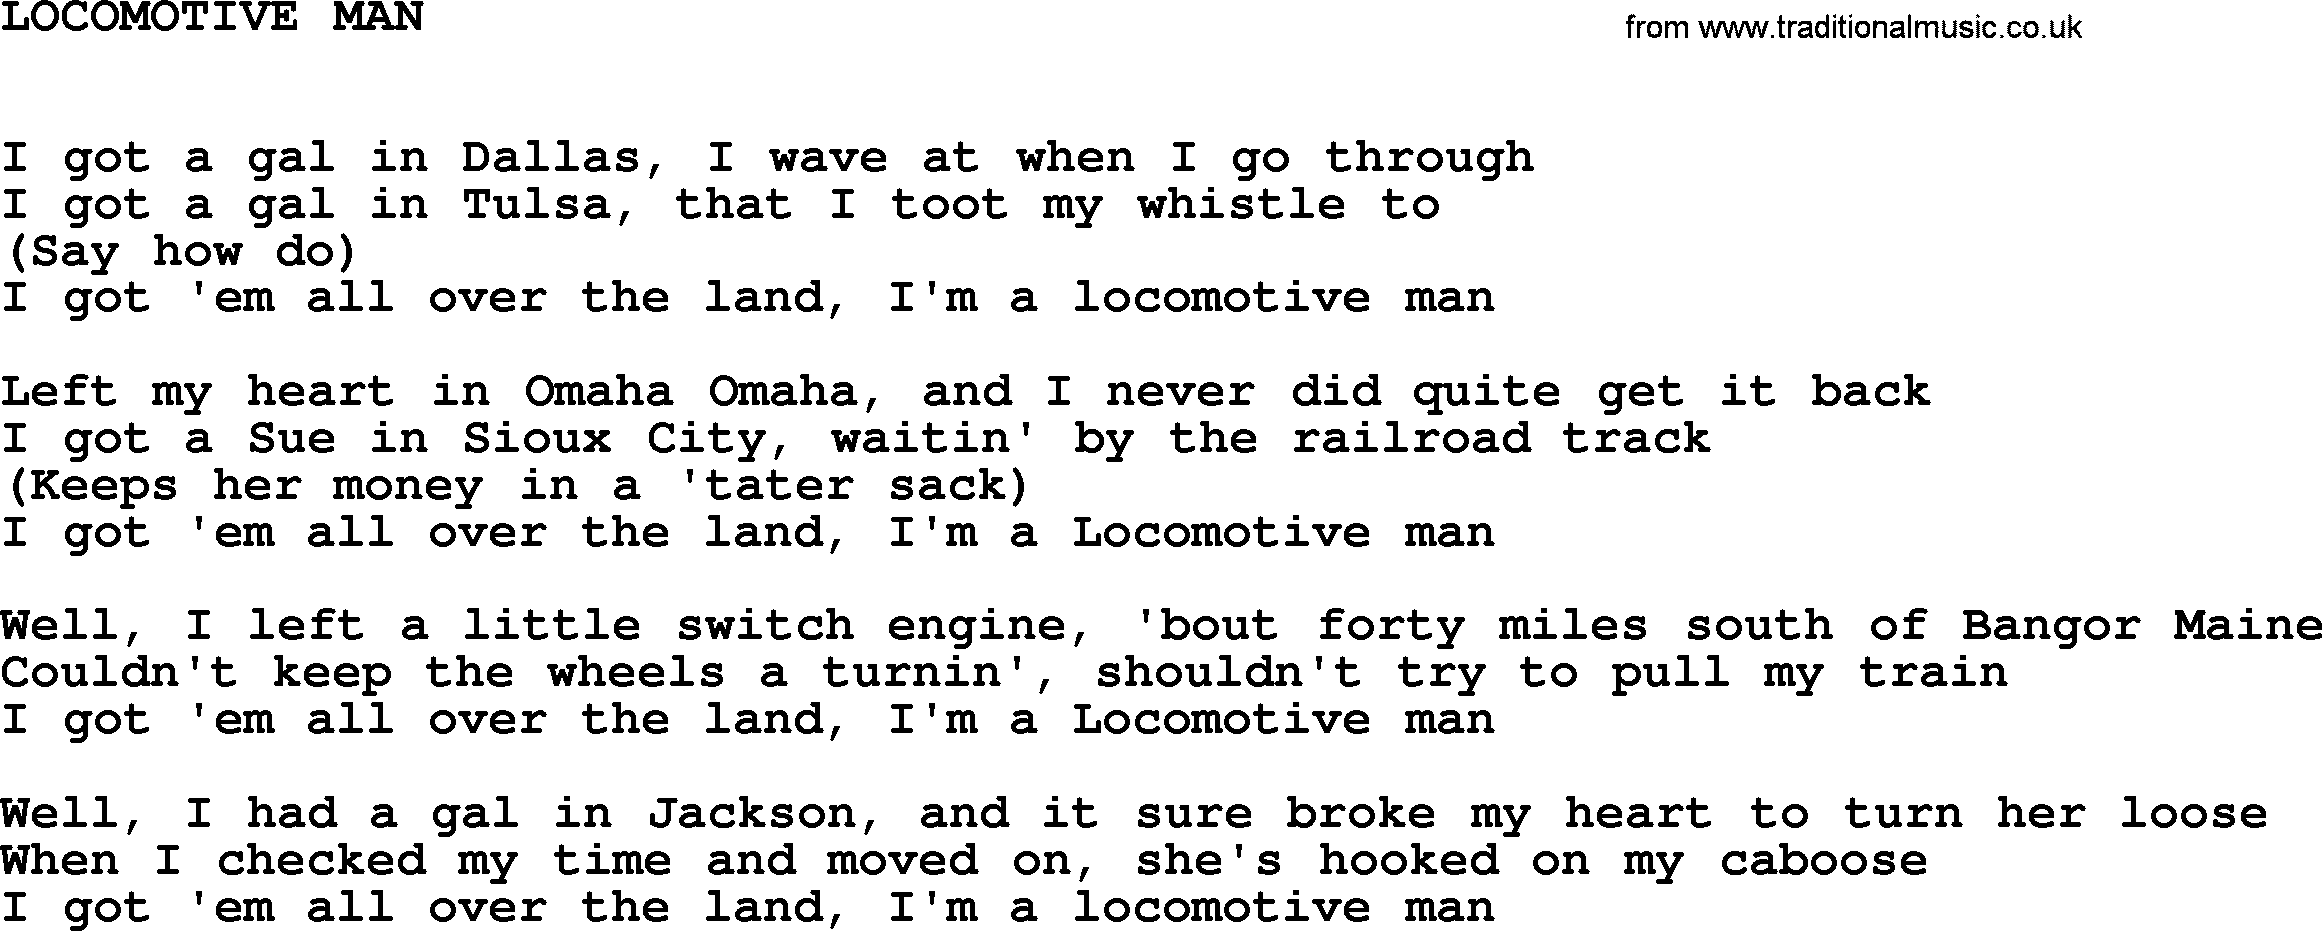 Johnny Cash song Locomotive Man.txt lyrics